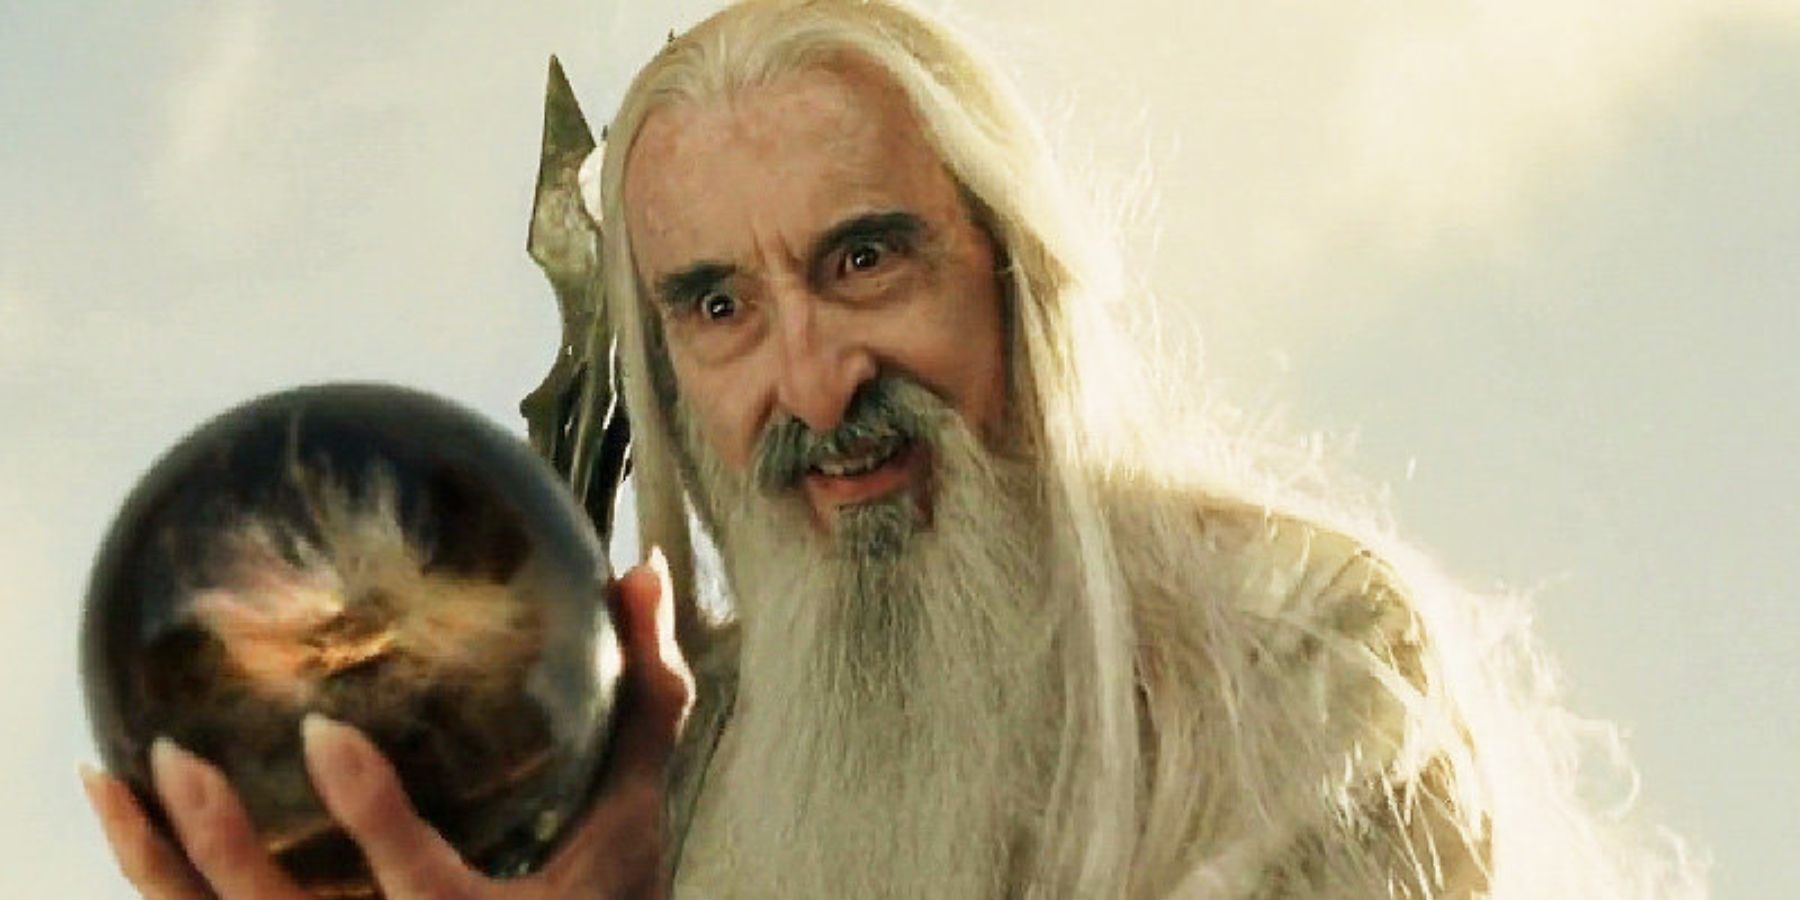 Saruman and the palantir